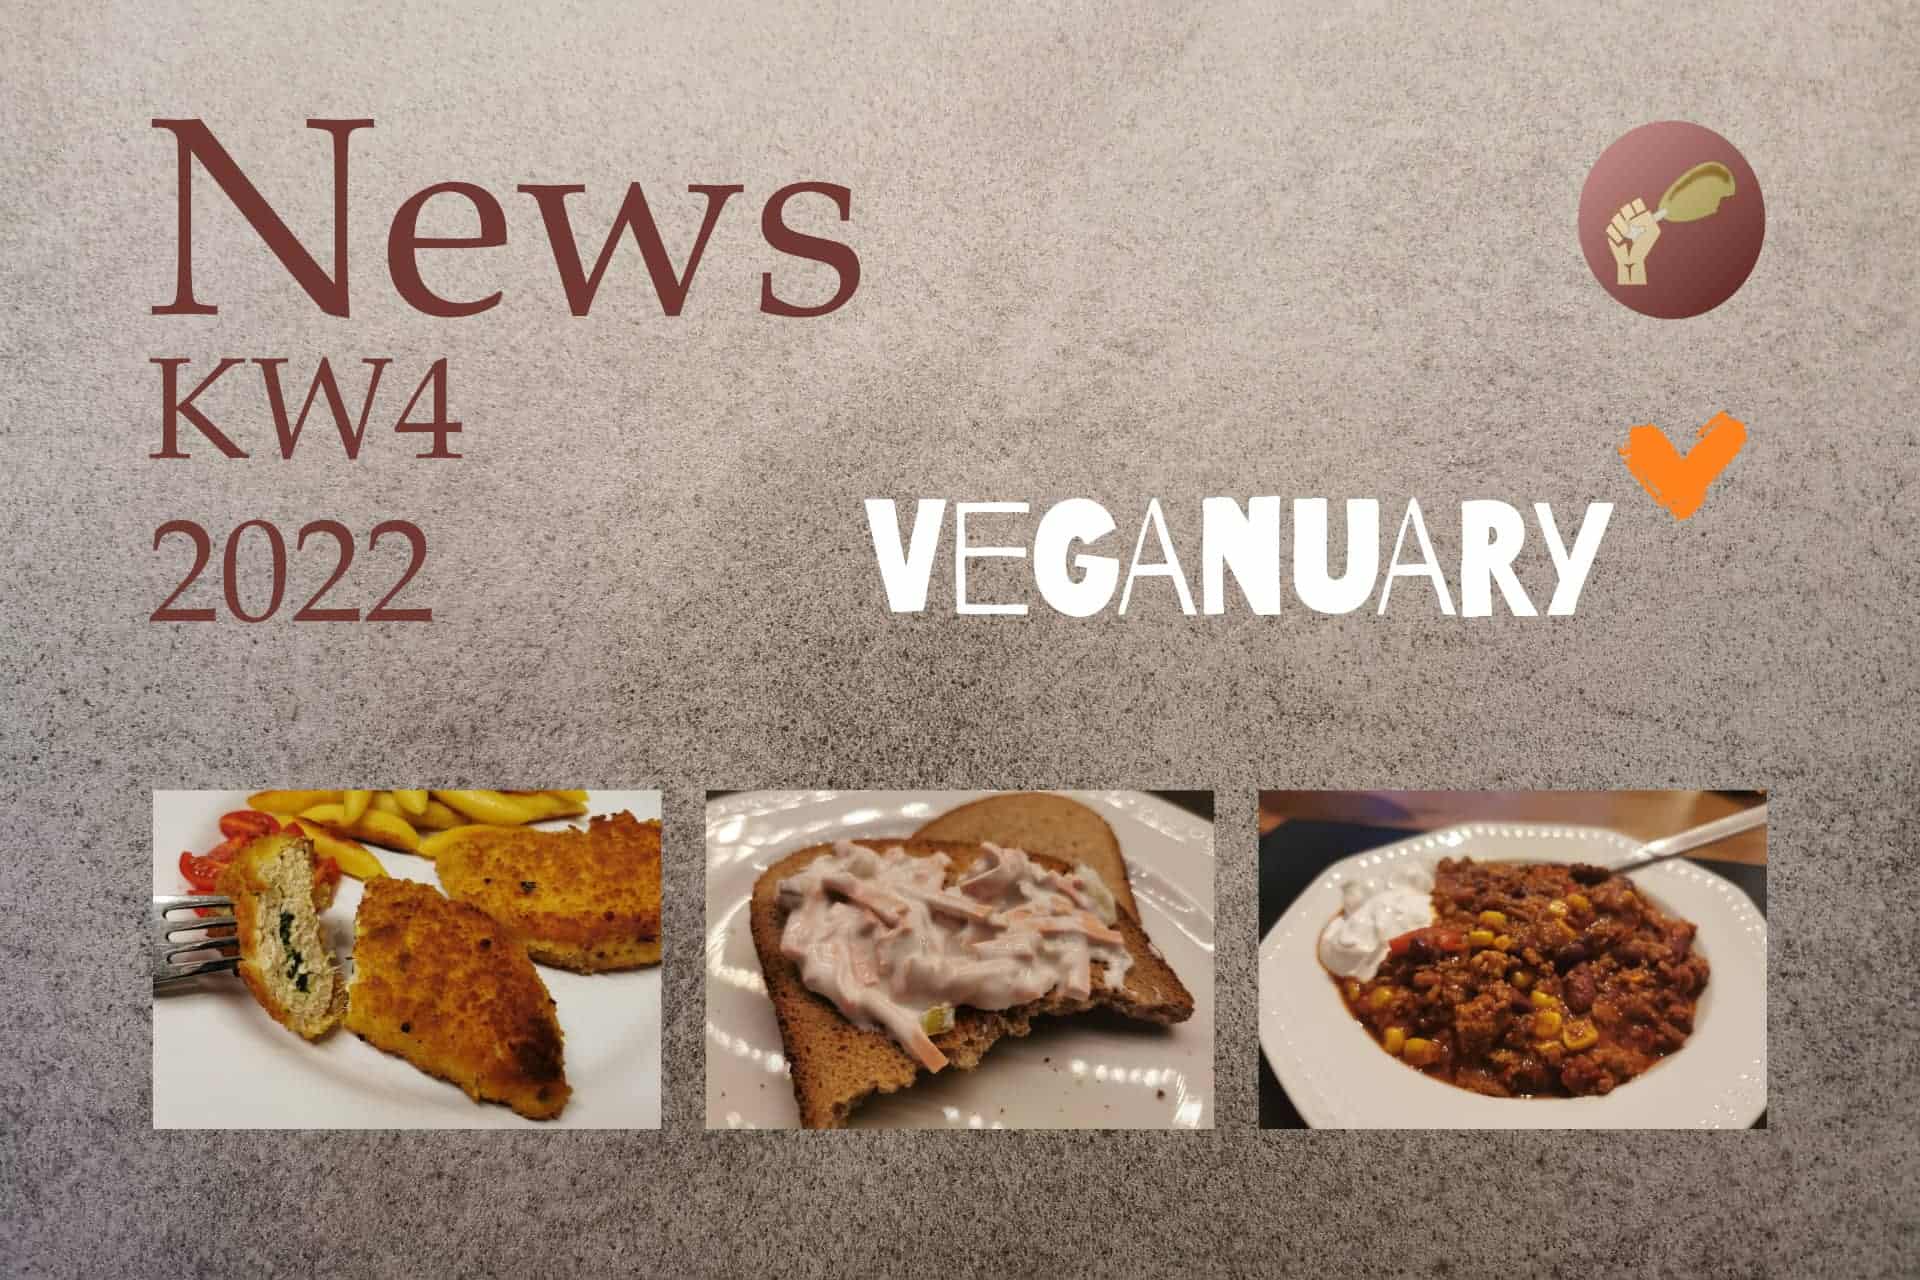 Fleischersatz News KW4 Veganuary